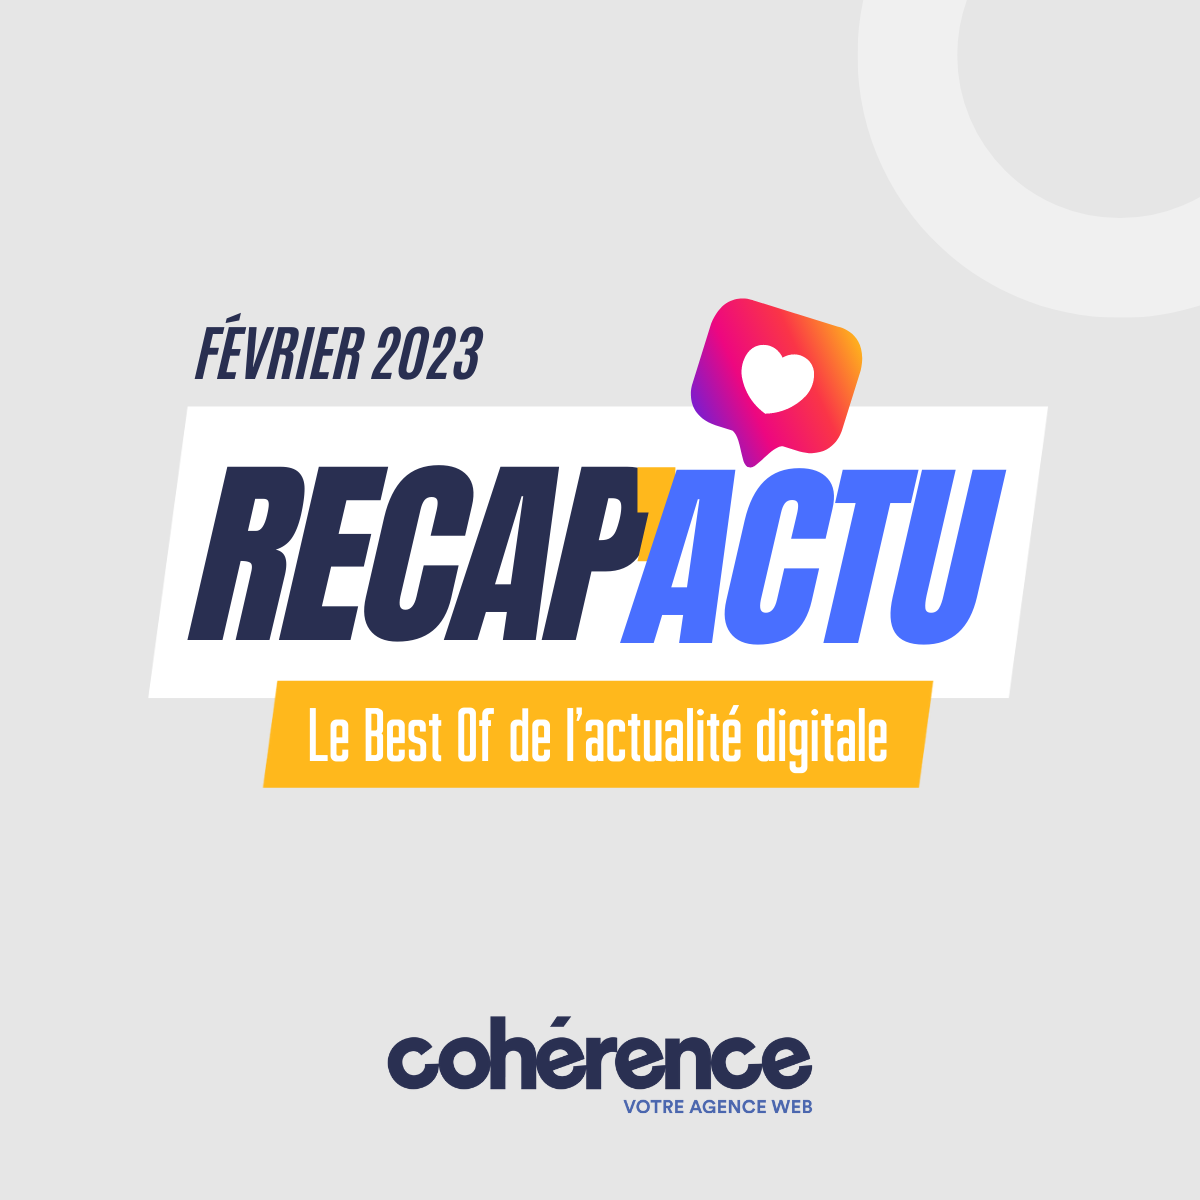 Coherence Agence Web A Rennes Le Best Of De Lactualite Digitale – Fevrier 2023